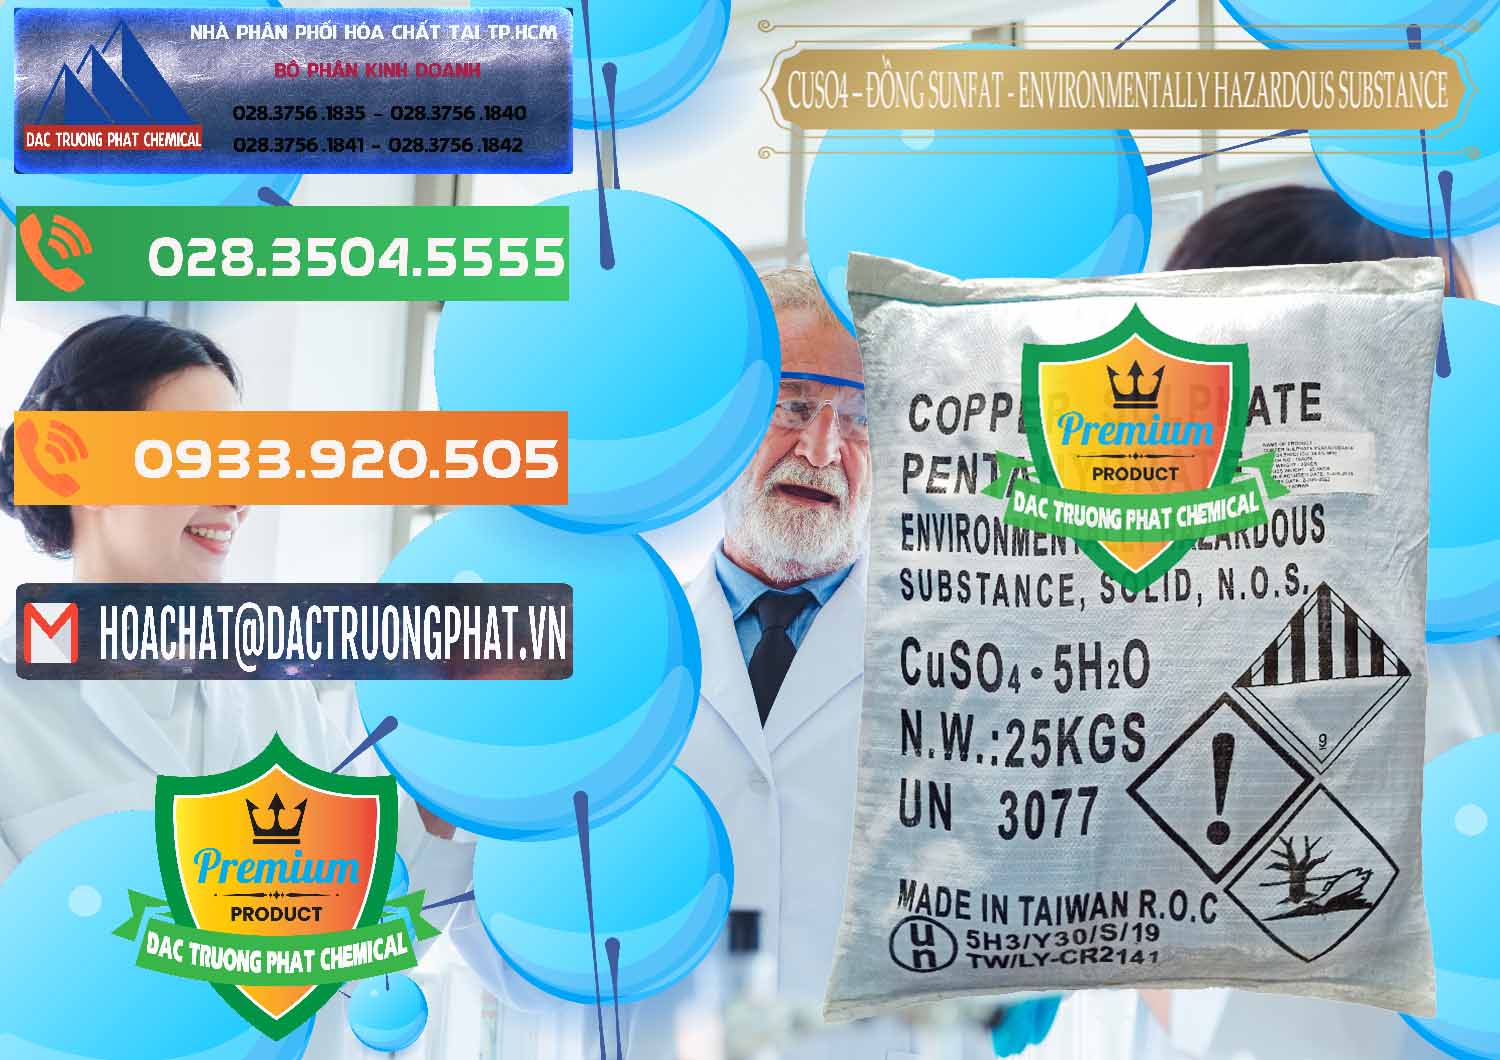 Nơi chuyên kinh doanh & bán CuSO4 – Đồng Sunfat Đài Loan Taiwan - 0059 - Đơn vị phân phối và cung cấp hóa chất tại TP.HCM - hoachatxulynuoc.com.vn